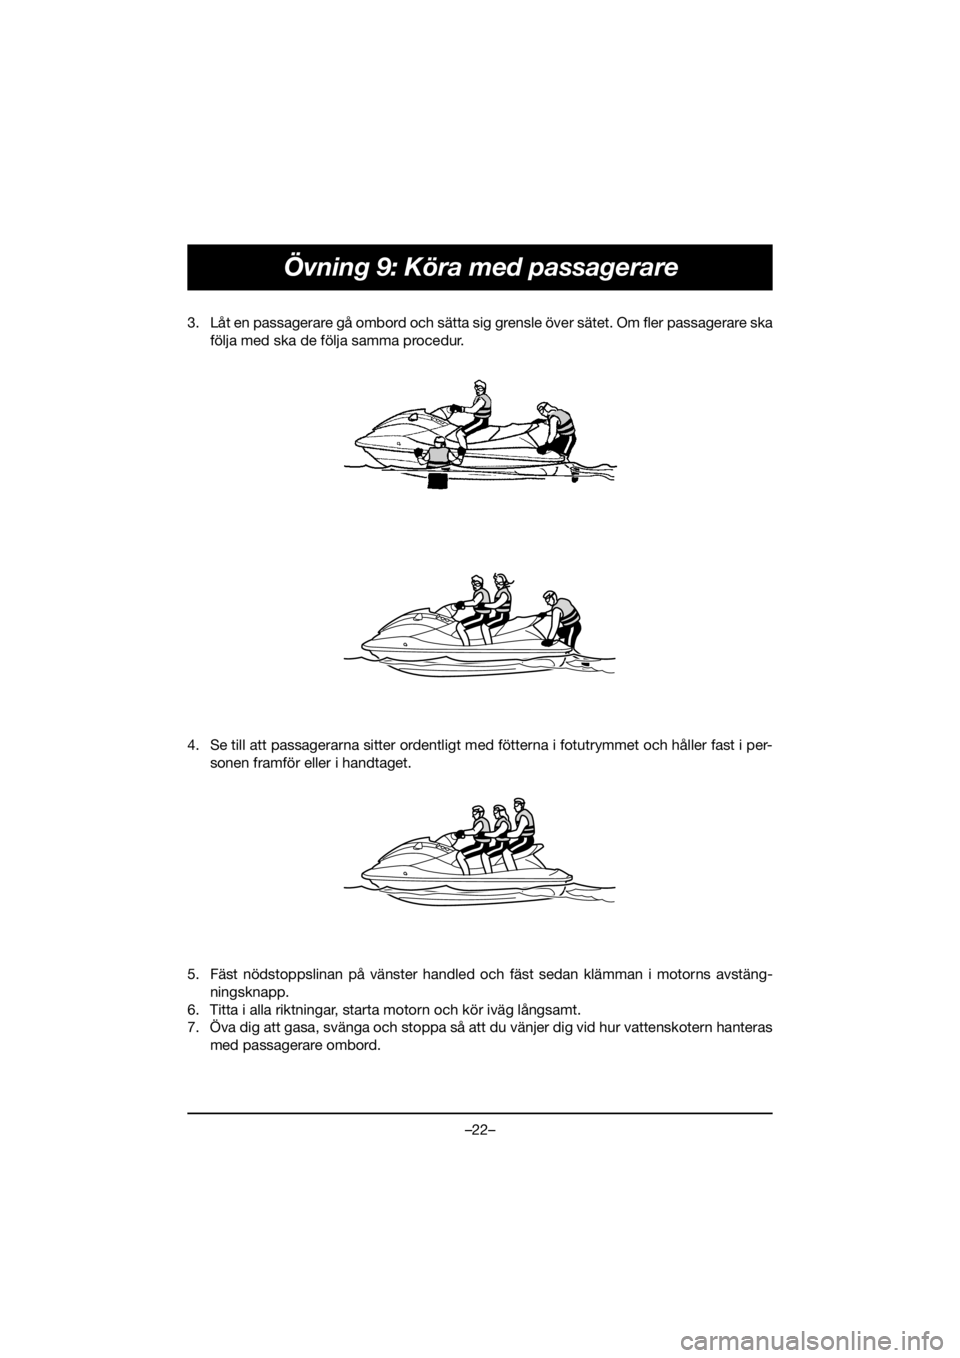 YAMAHA EX SPORT 2020  Manuale duso (in Italian) –22–
Övning 9: Köra med passagerare
3. Låt en passagerare gå ombord och sätta sig grensle över sätet. Om fler passagerare ska
följa med ska de följa samma procedur. 
4. Se till att passag